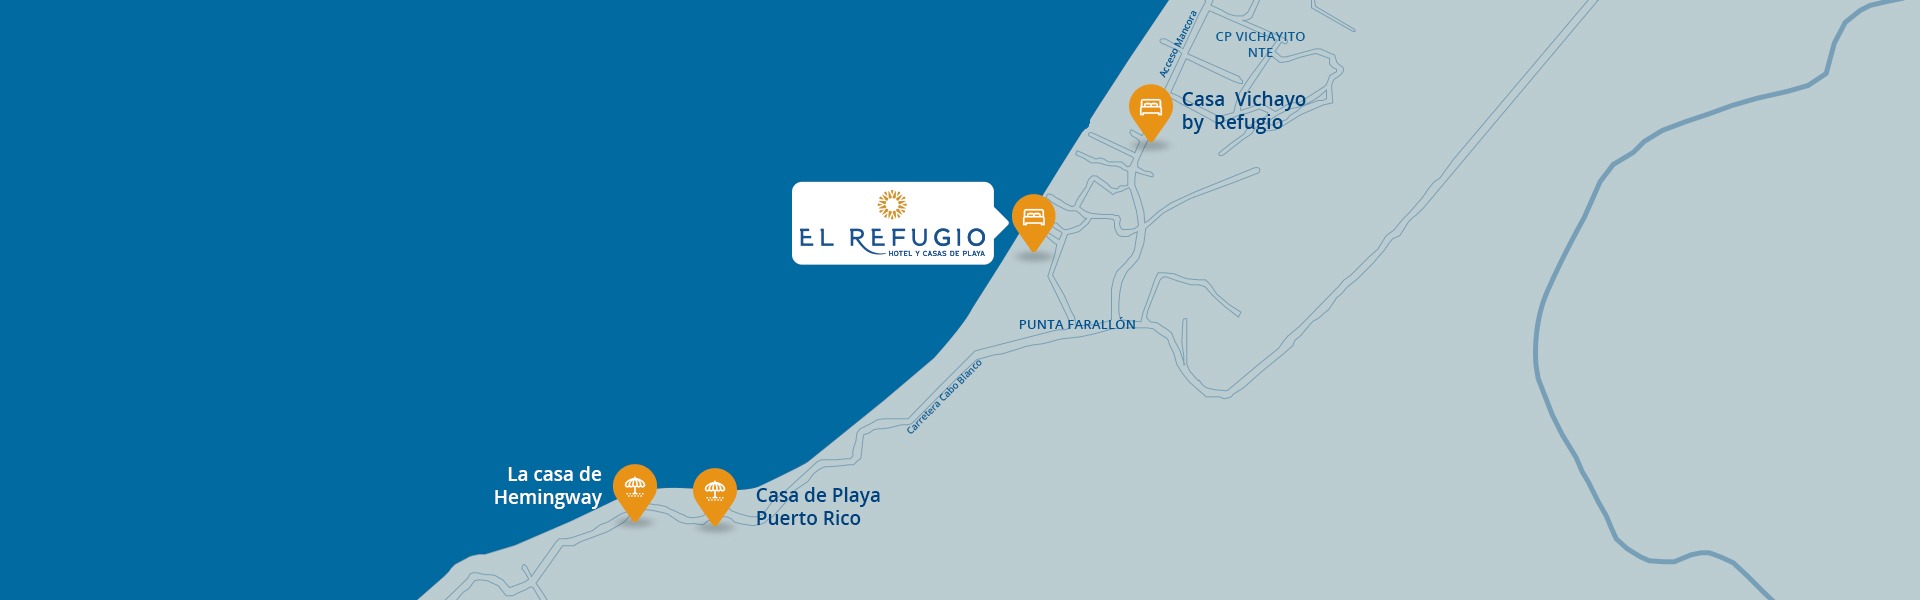 El Refugio Hotel y Casas de Playa Mapa